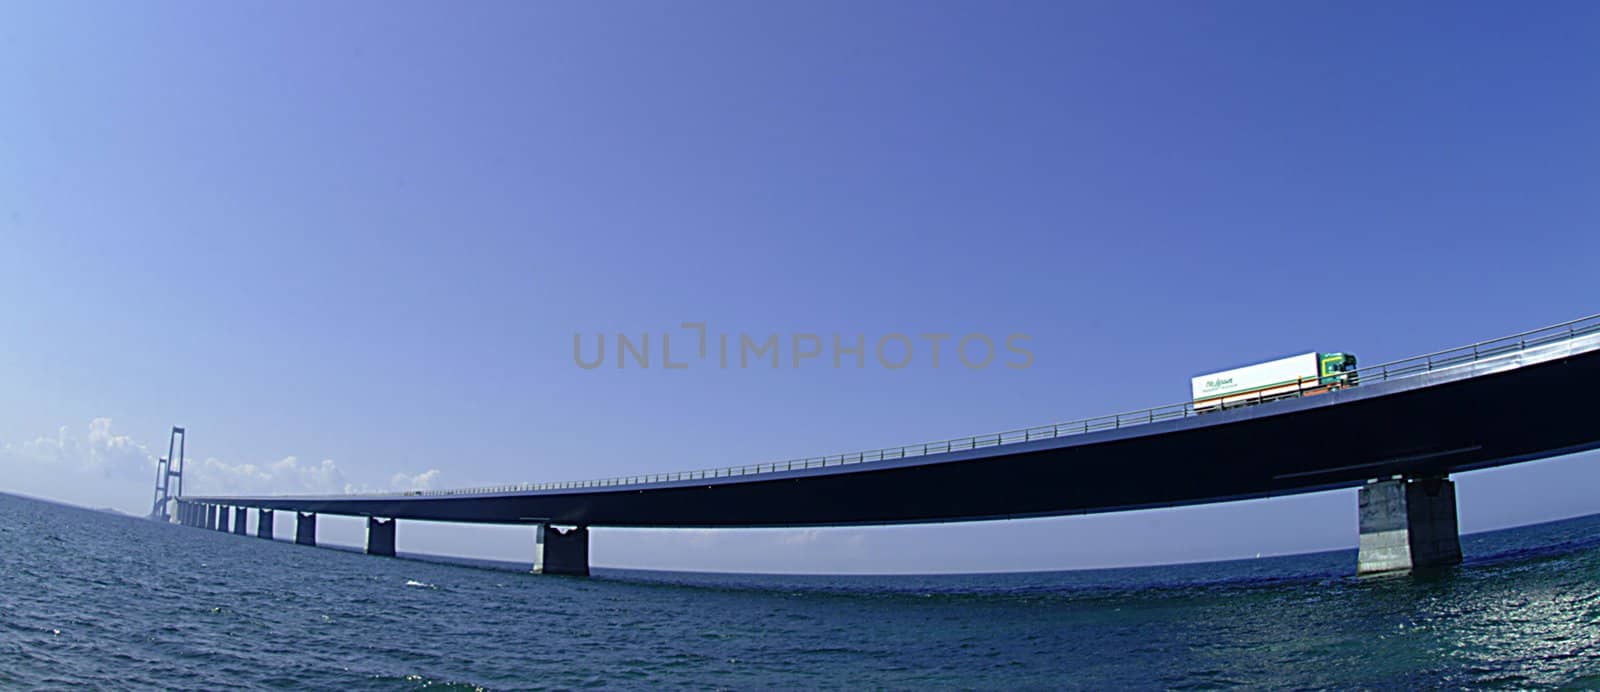 bridge over sea